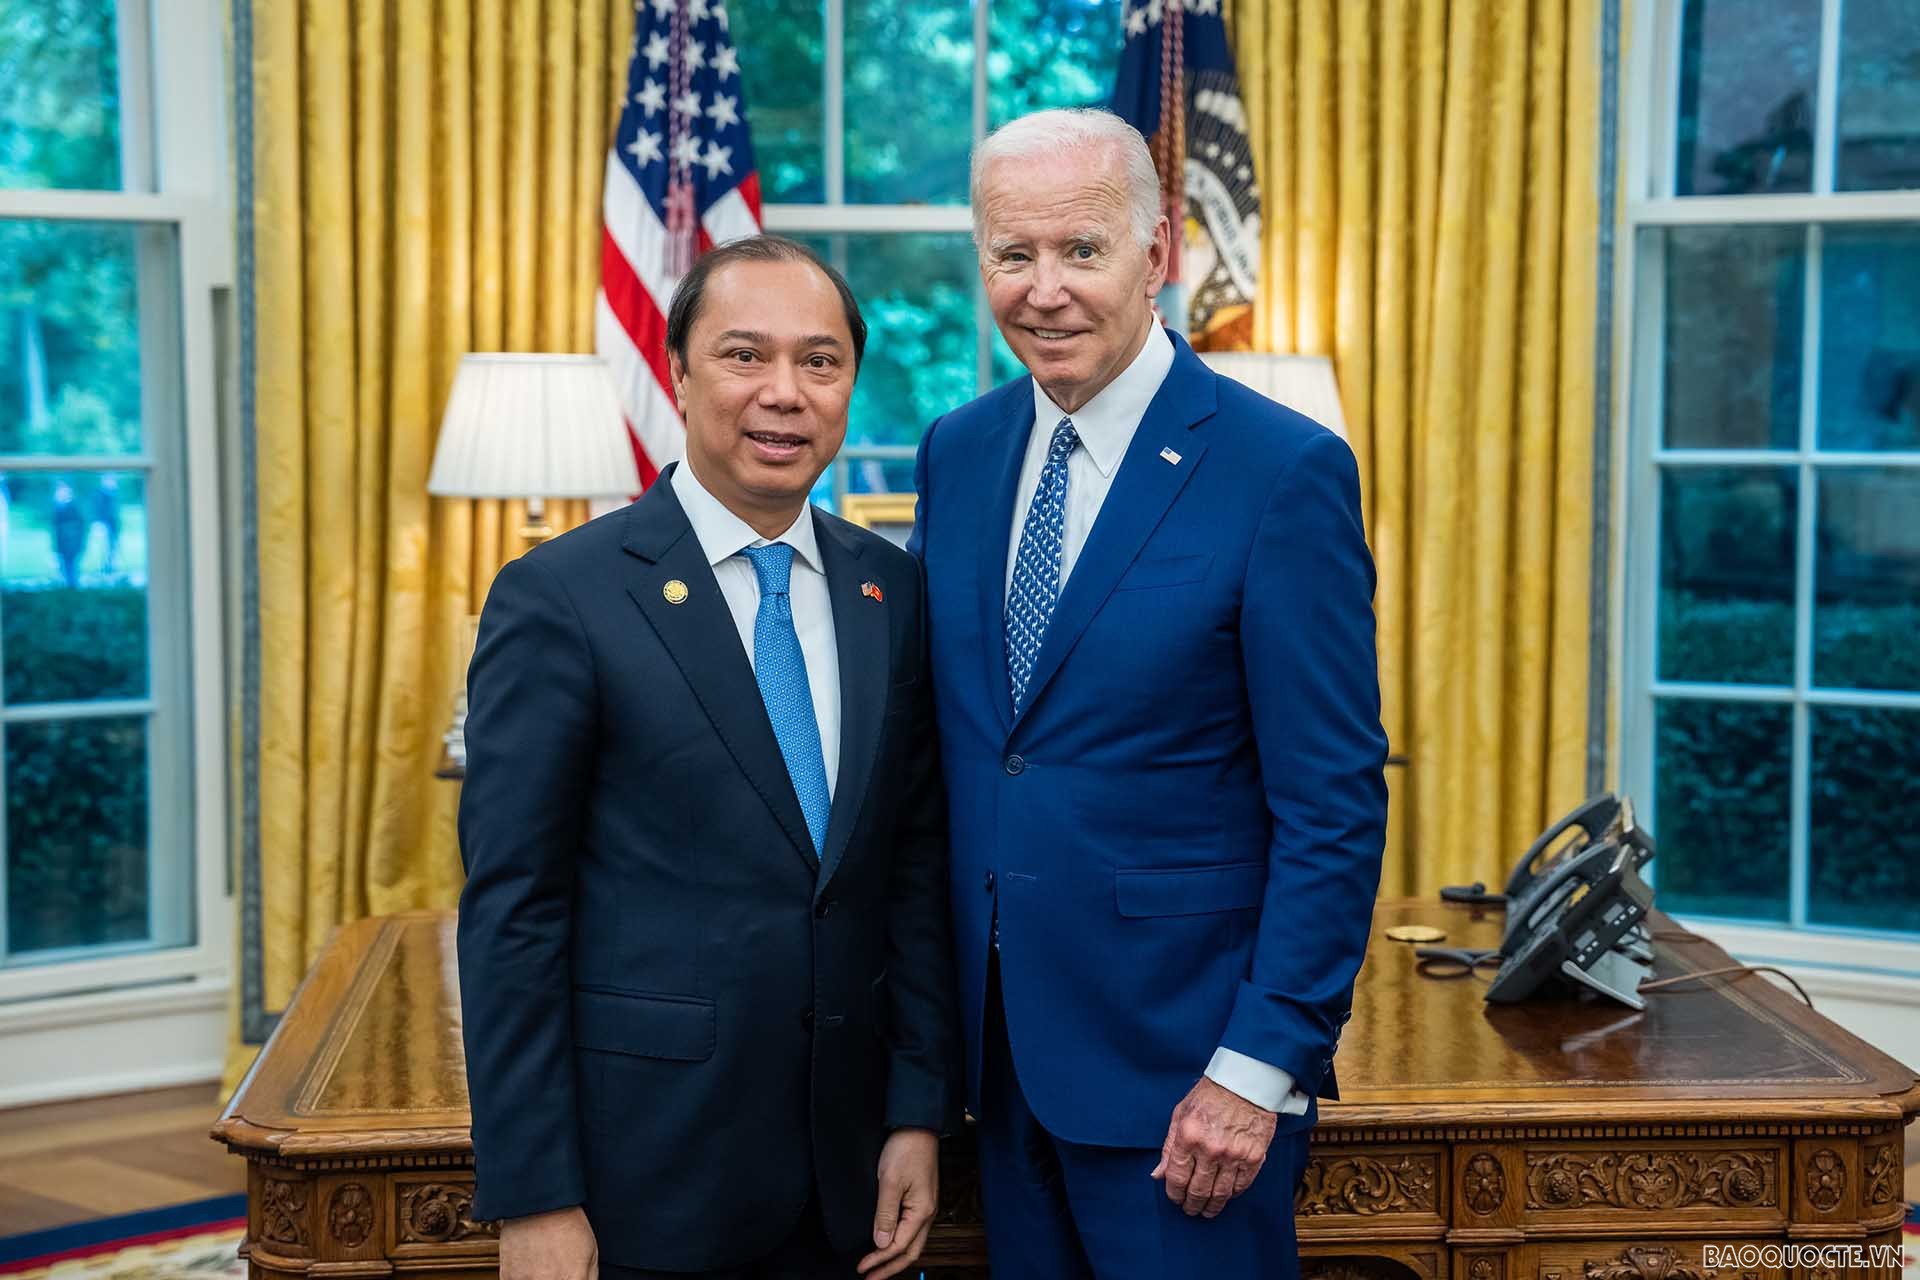 Tổng thống Joe Biden chào mừng Đại sứ Nguyễn Quốc Dũng nhận nhiệm vụ tại Hoa Kỳ - Ảnh 1.